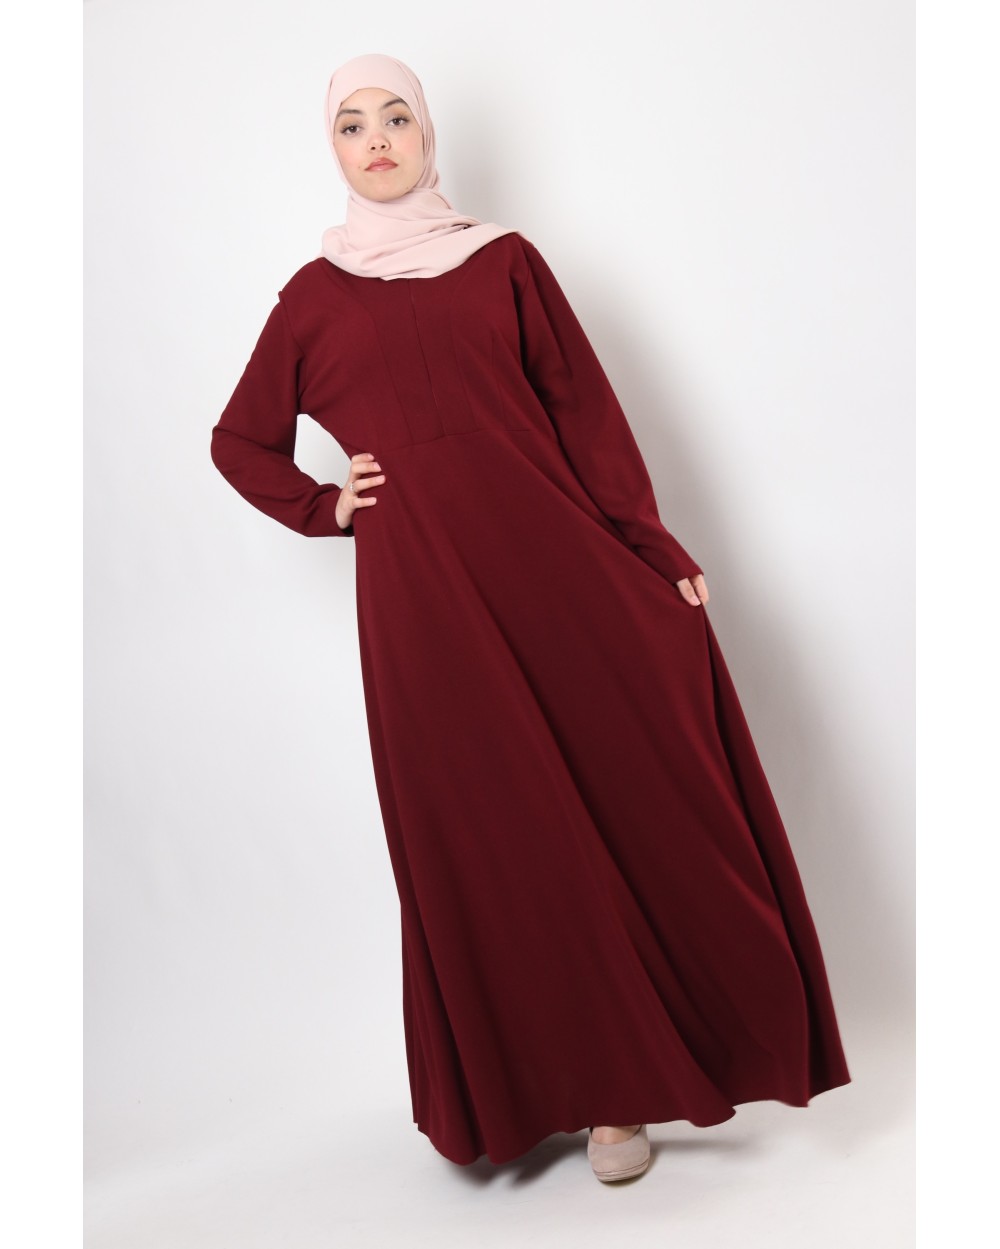 Sultana Dress